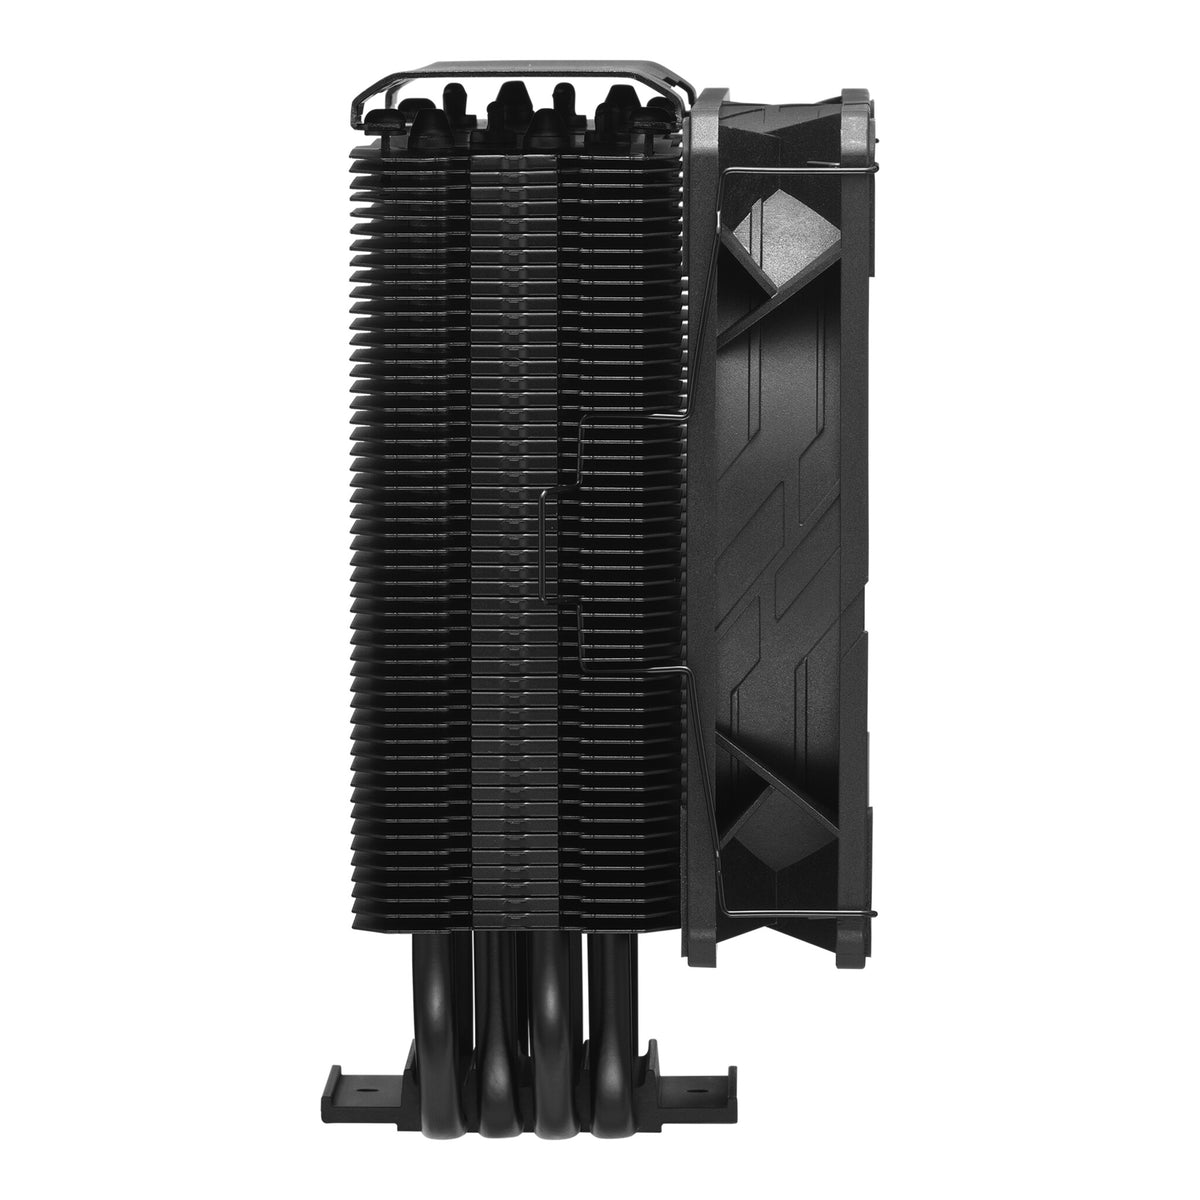 Cooler Master Hyper 212 - Air Processor Cooler in Black - 120mm